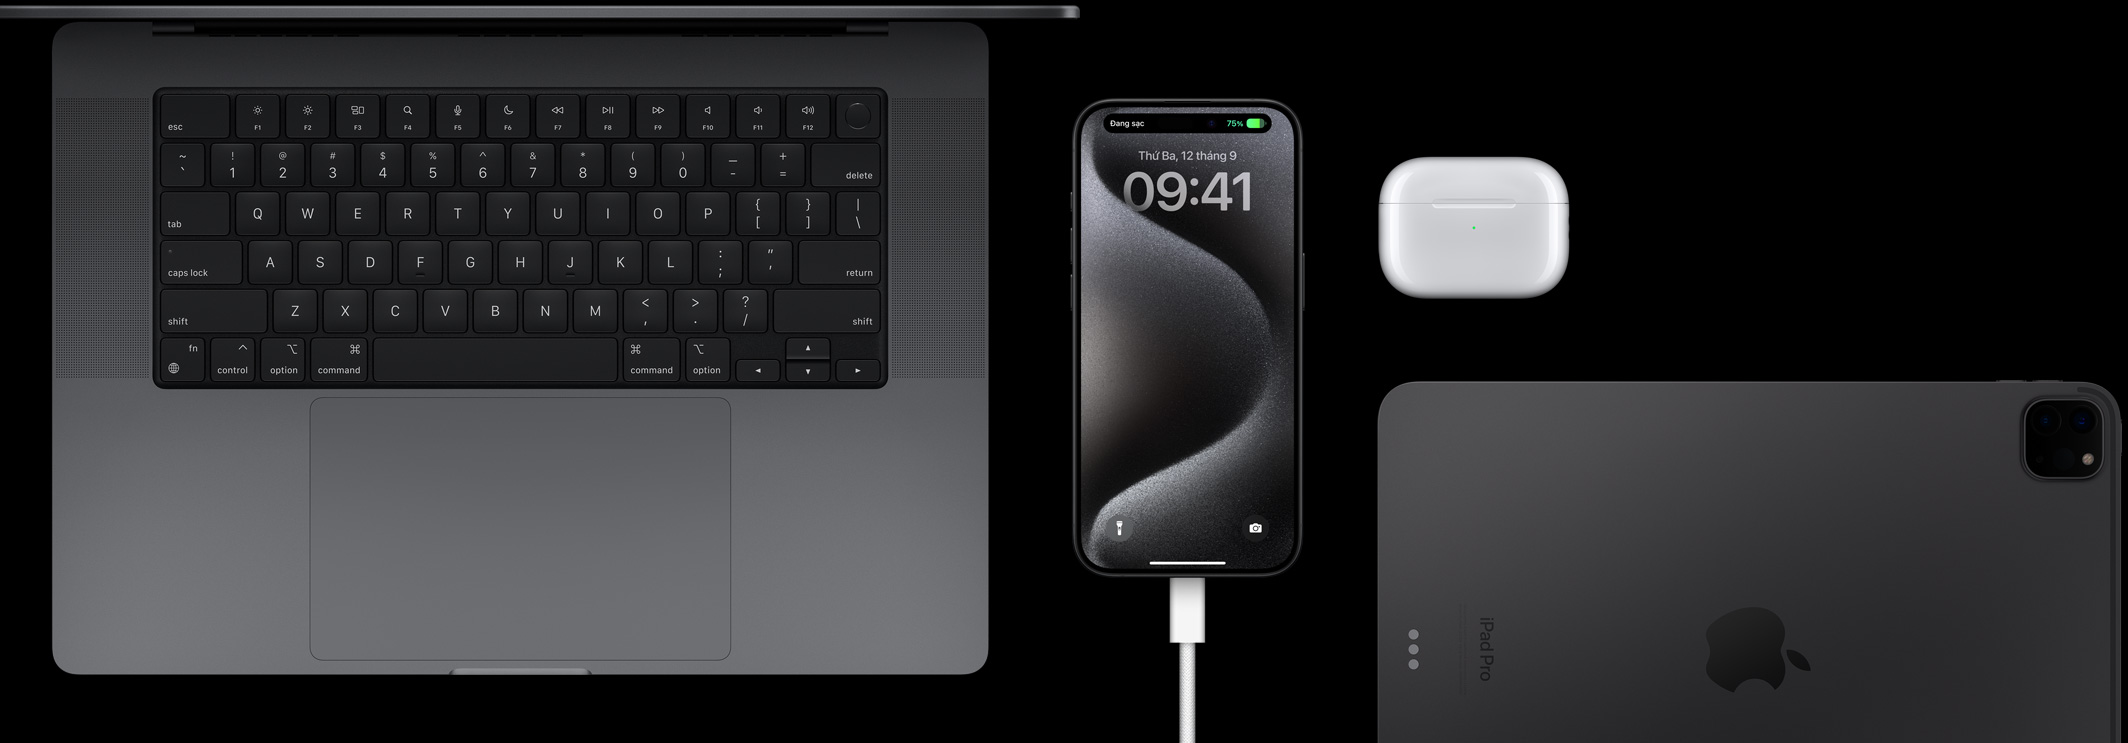 iPhone 15 Pro với dây USB-C đang được cắm vào, xung quanh là Macbook Pro, AirPods Pro và iPad